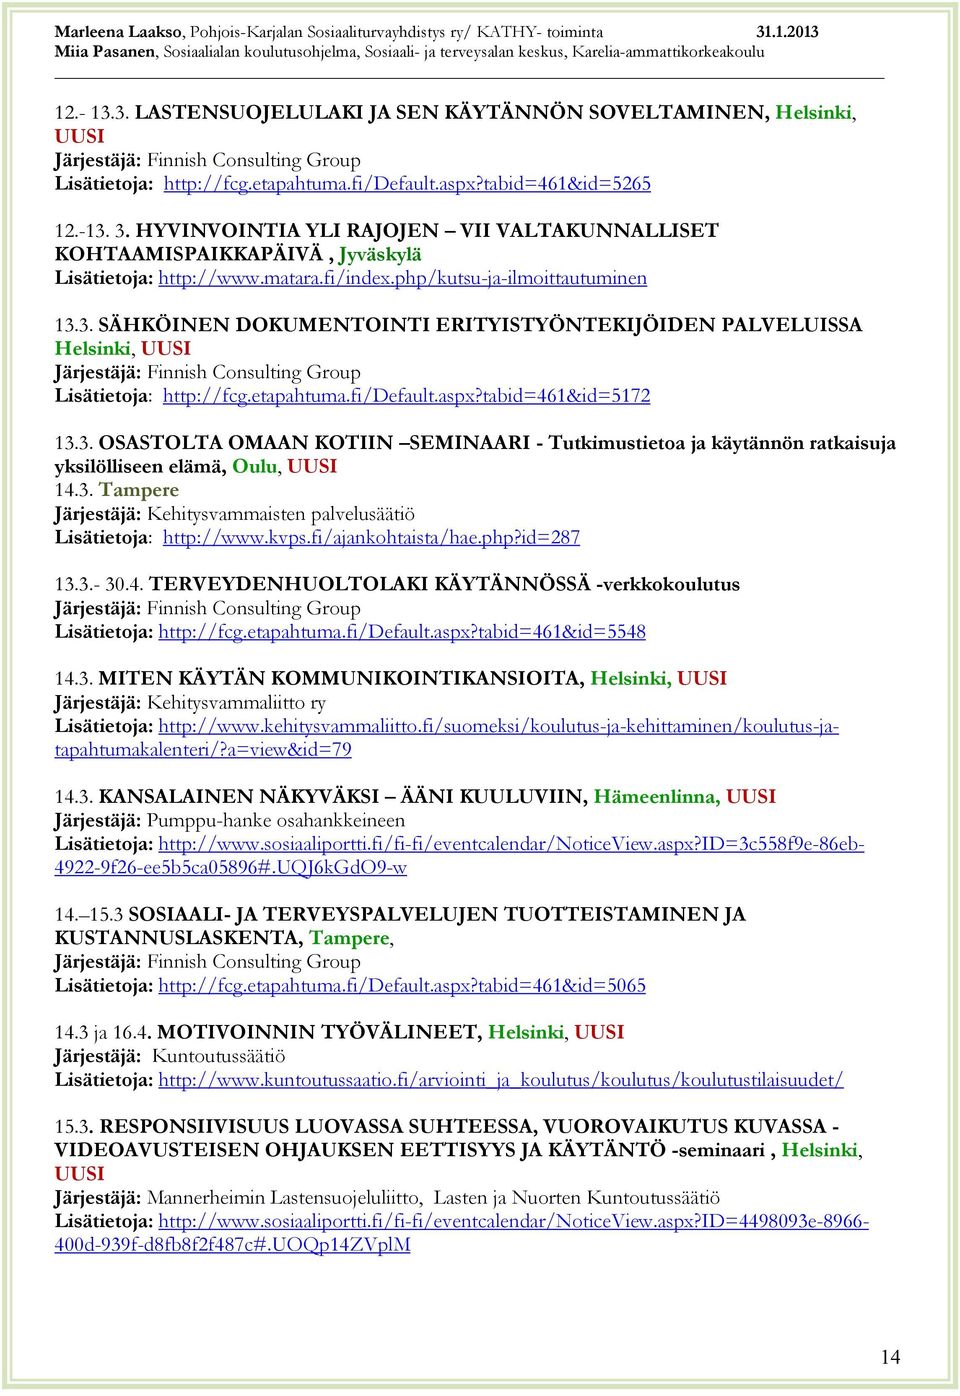 3. SÄHKÖINEN DOKUMENTOINTI ERITYISTYÖNTEKIJÖIDEN PALVELUISSA Helsinki, http://fcg.etapahtuma.fi/default.aspx?tabid=461&id=5172 13.3. OSASTOLTA OMAAN KOTIIN SEMINAARI - Tutkimustietoa ja käytännön ratkaisuja yksilölliseen elämä, Oulu, 14.